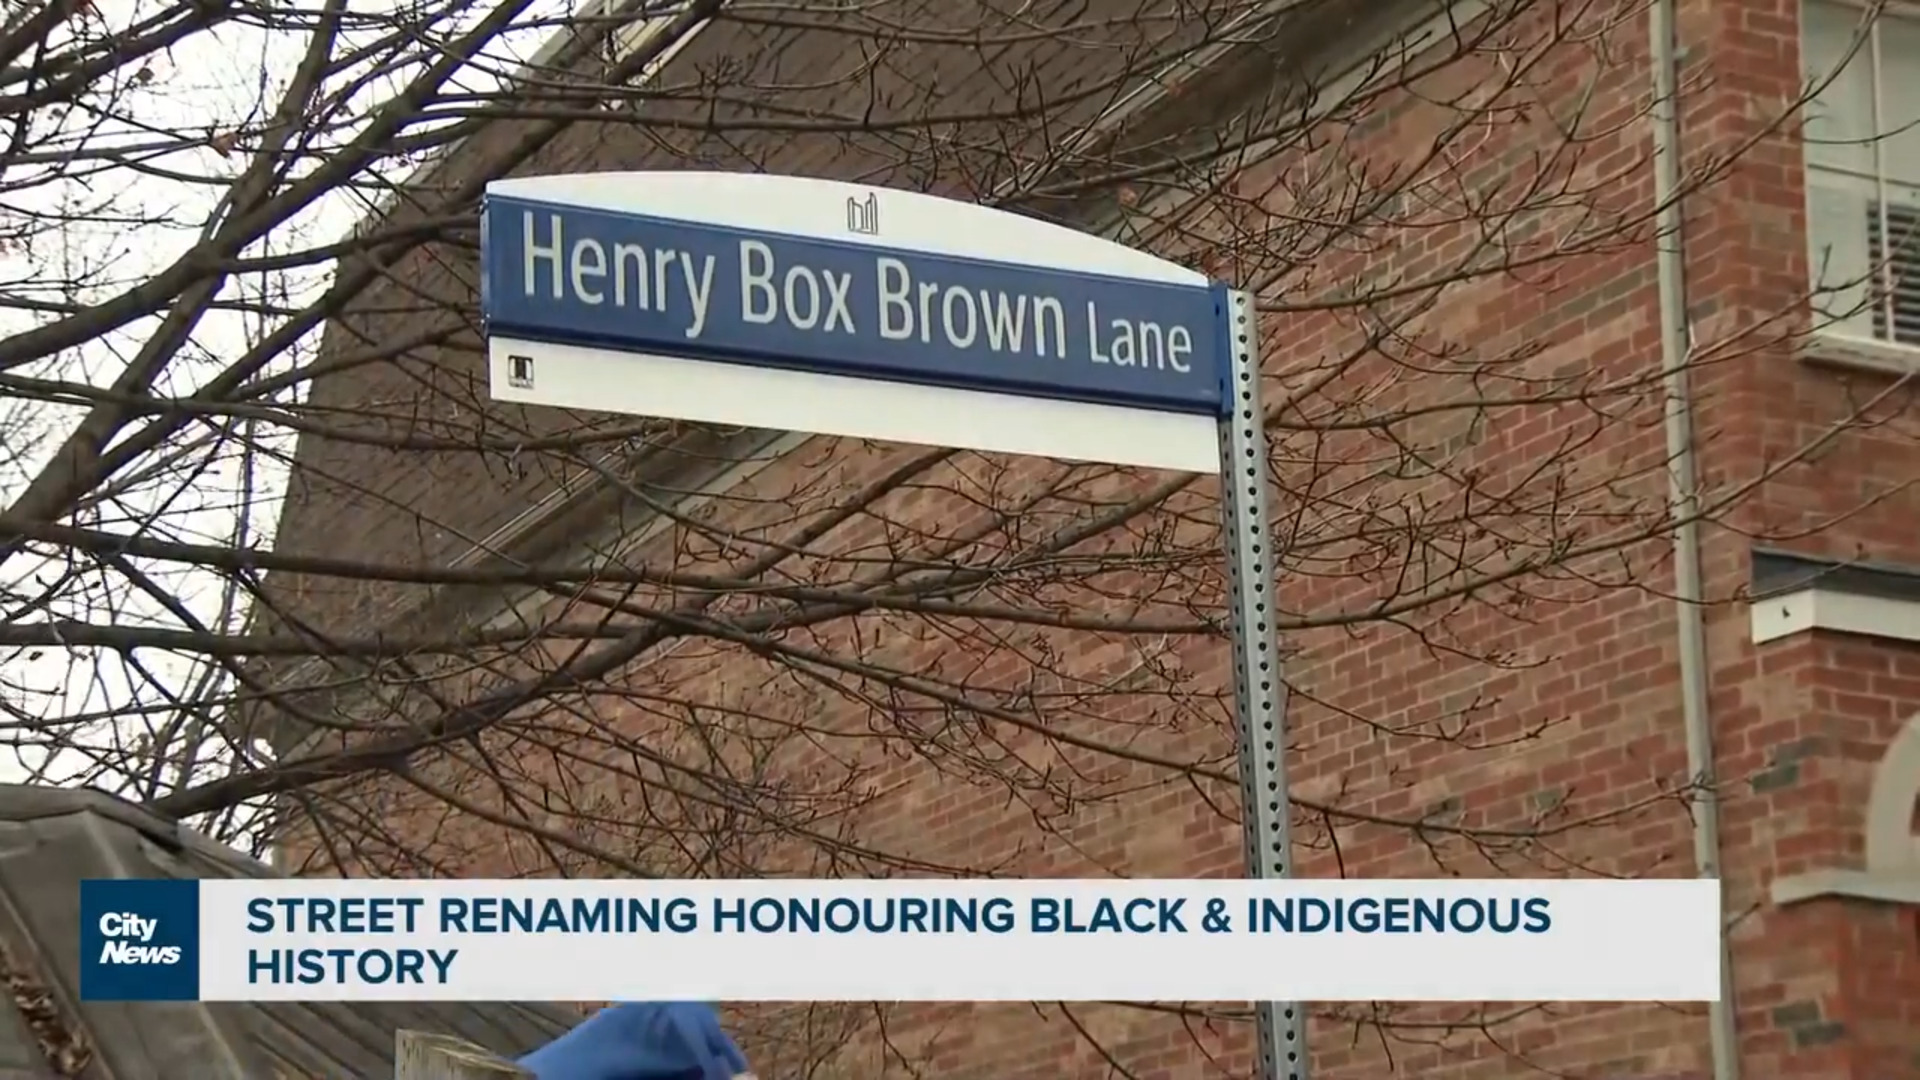 “这里有丰富的历史”，多伦多揭示新的街道标志，以表彰黑人和土著历史